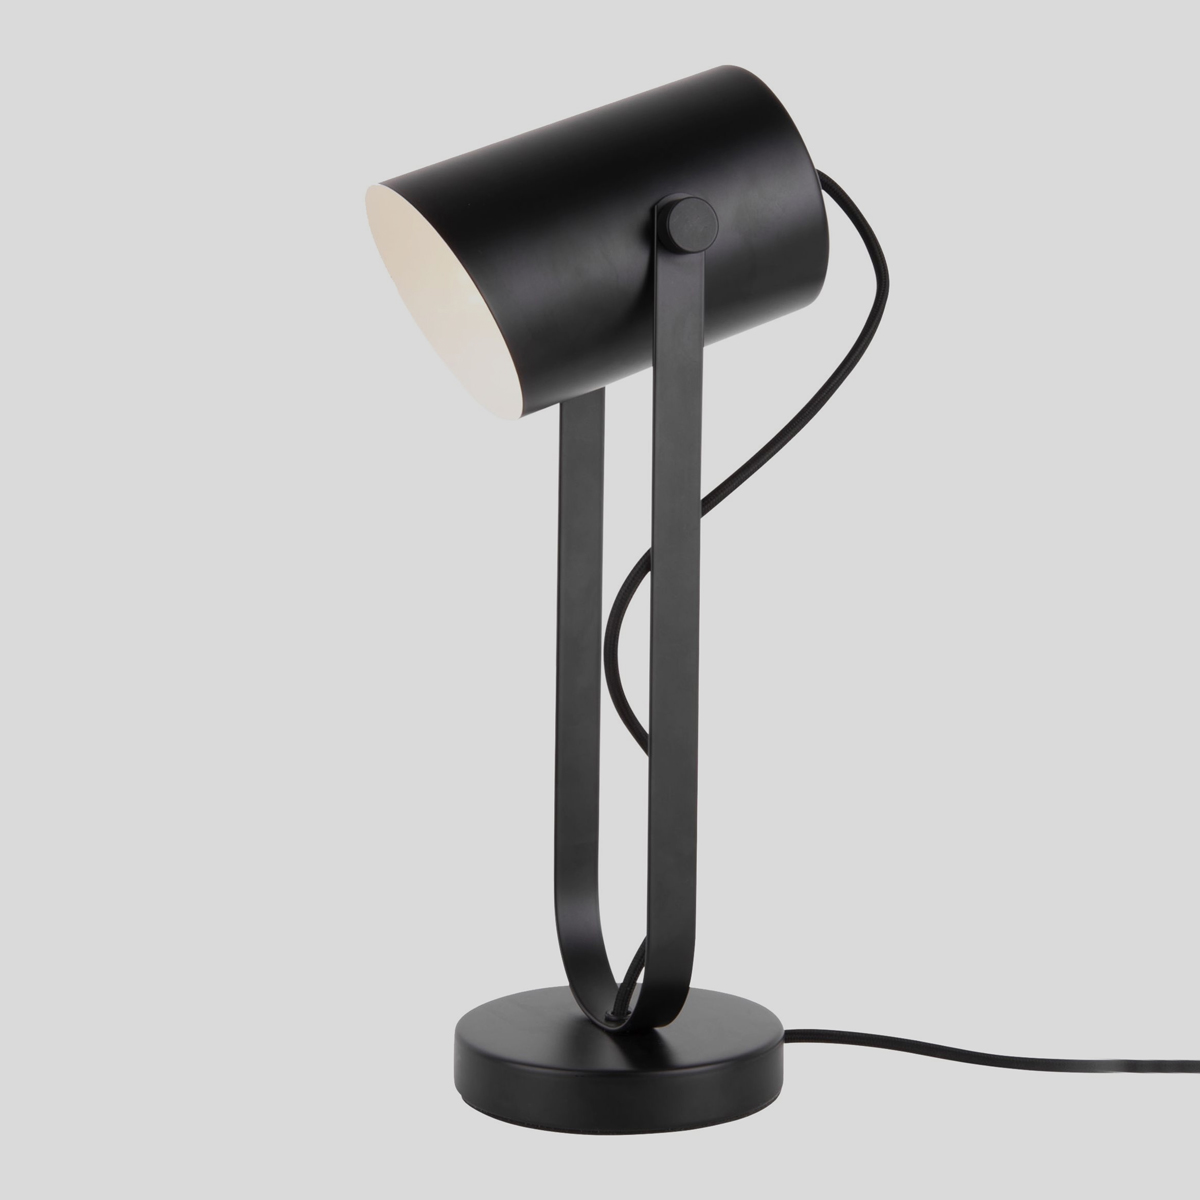 De trendy Snazzy tafellamp van Leitmotiv heeft in het zwart een mooi industrieel tintje en past in ieder interieur. 